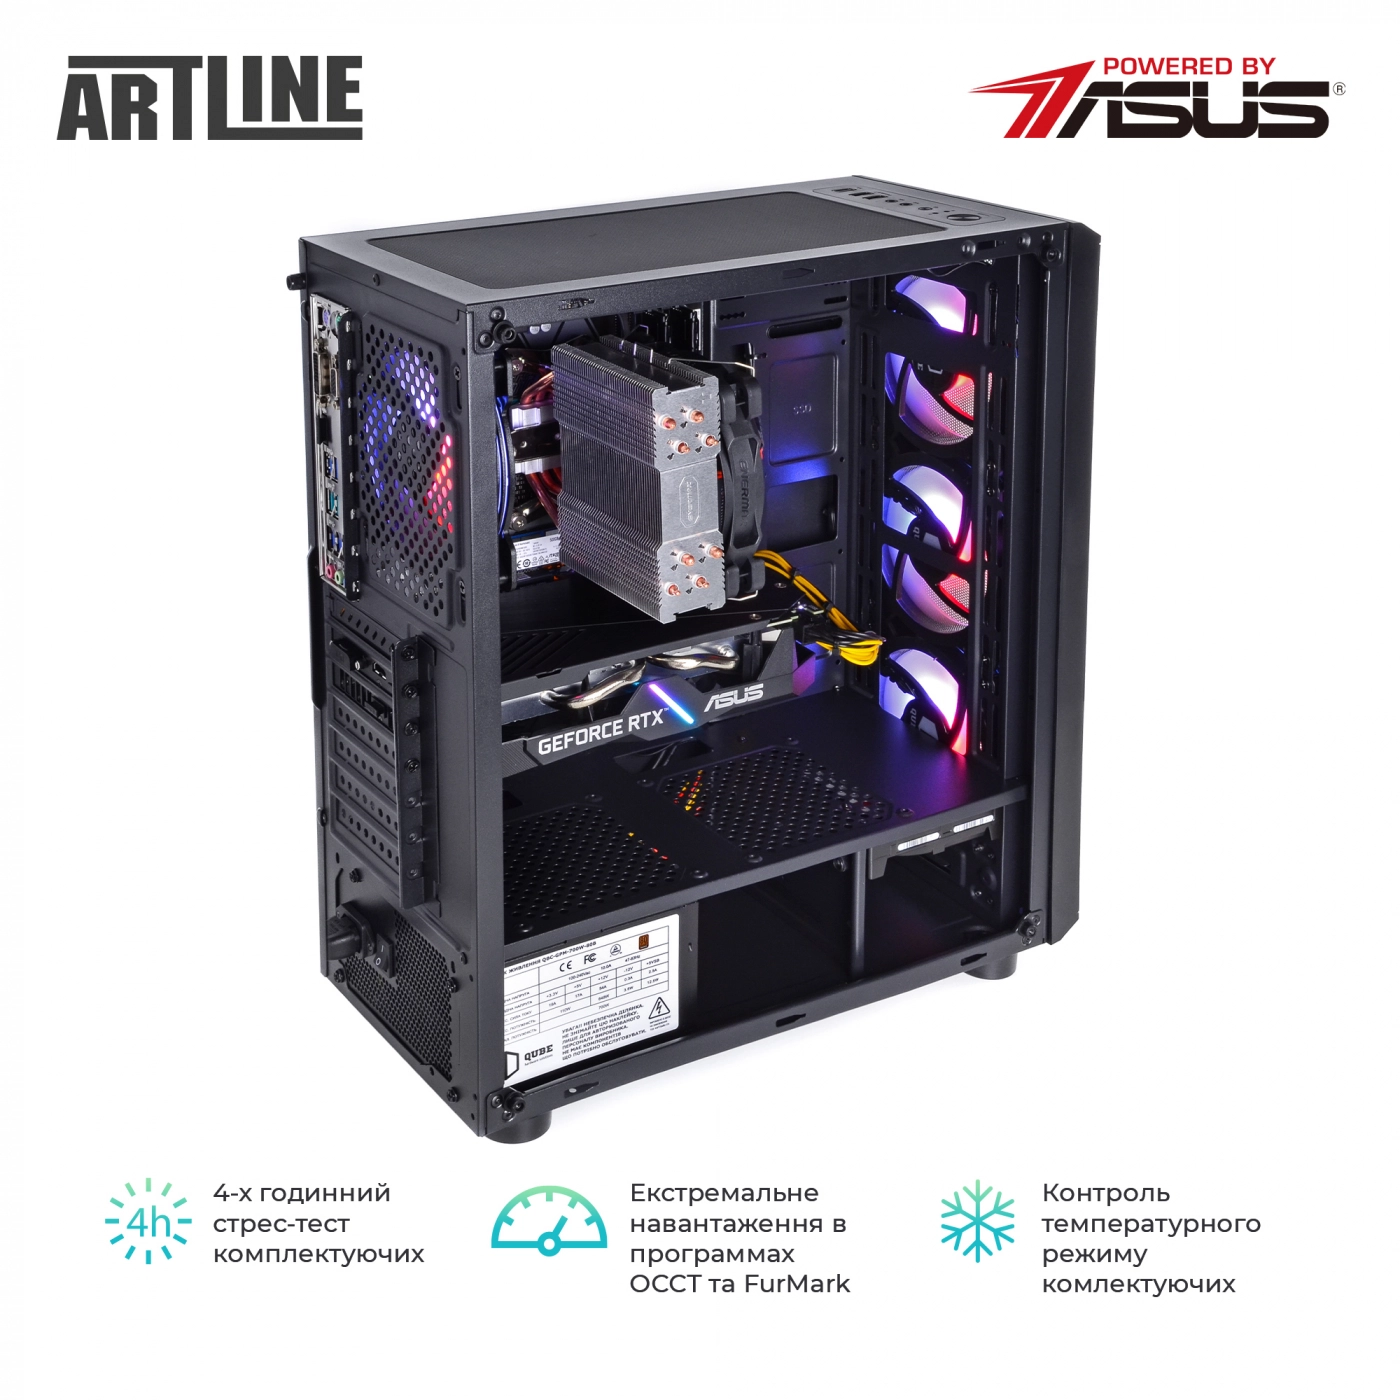 Купить Компьютер ARTLINE Gaming X85v21 - фото 9